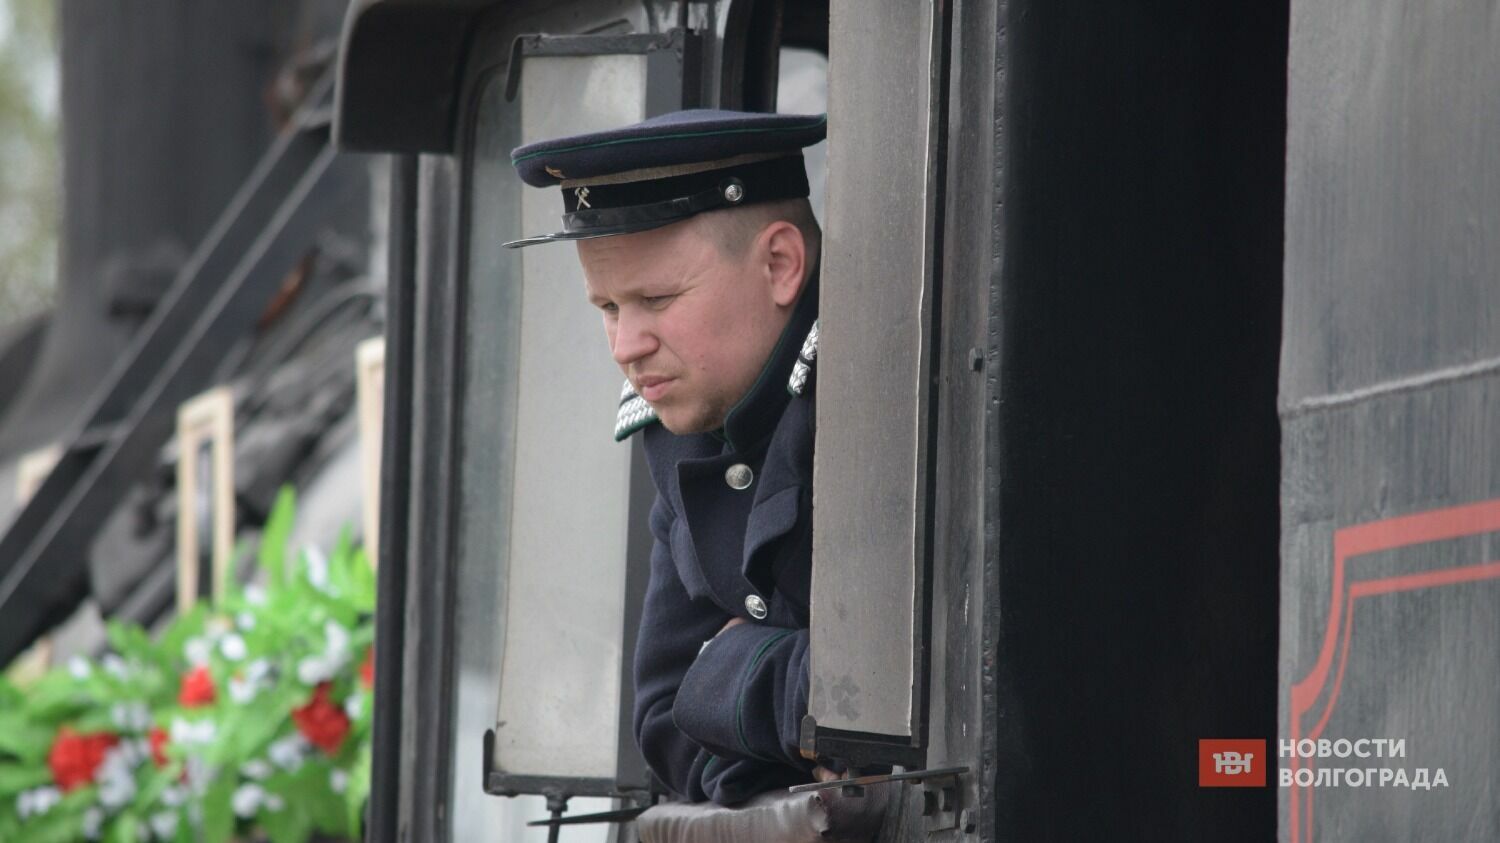 «Воинский эшелон» был сформирован из 2 паровозов и 6 платформ с техникой, применявшейся в период Сталинградской битвы.